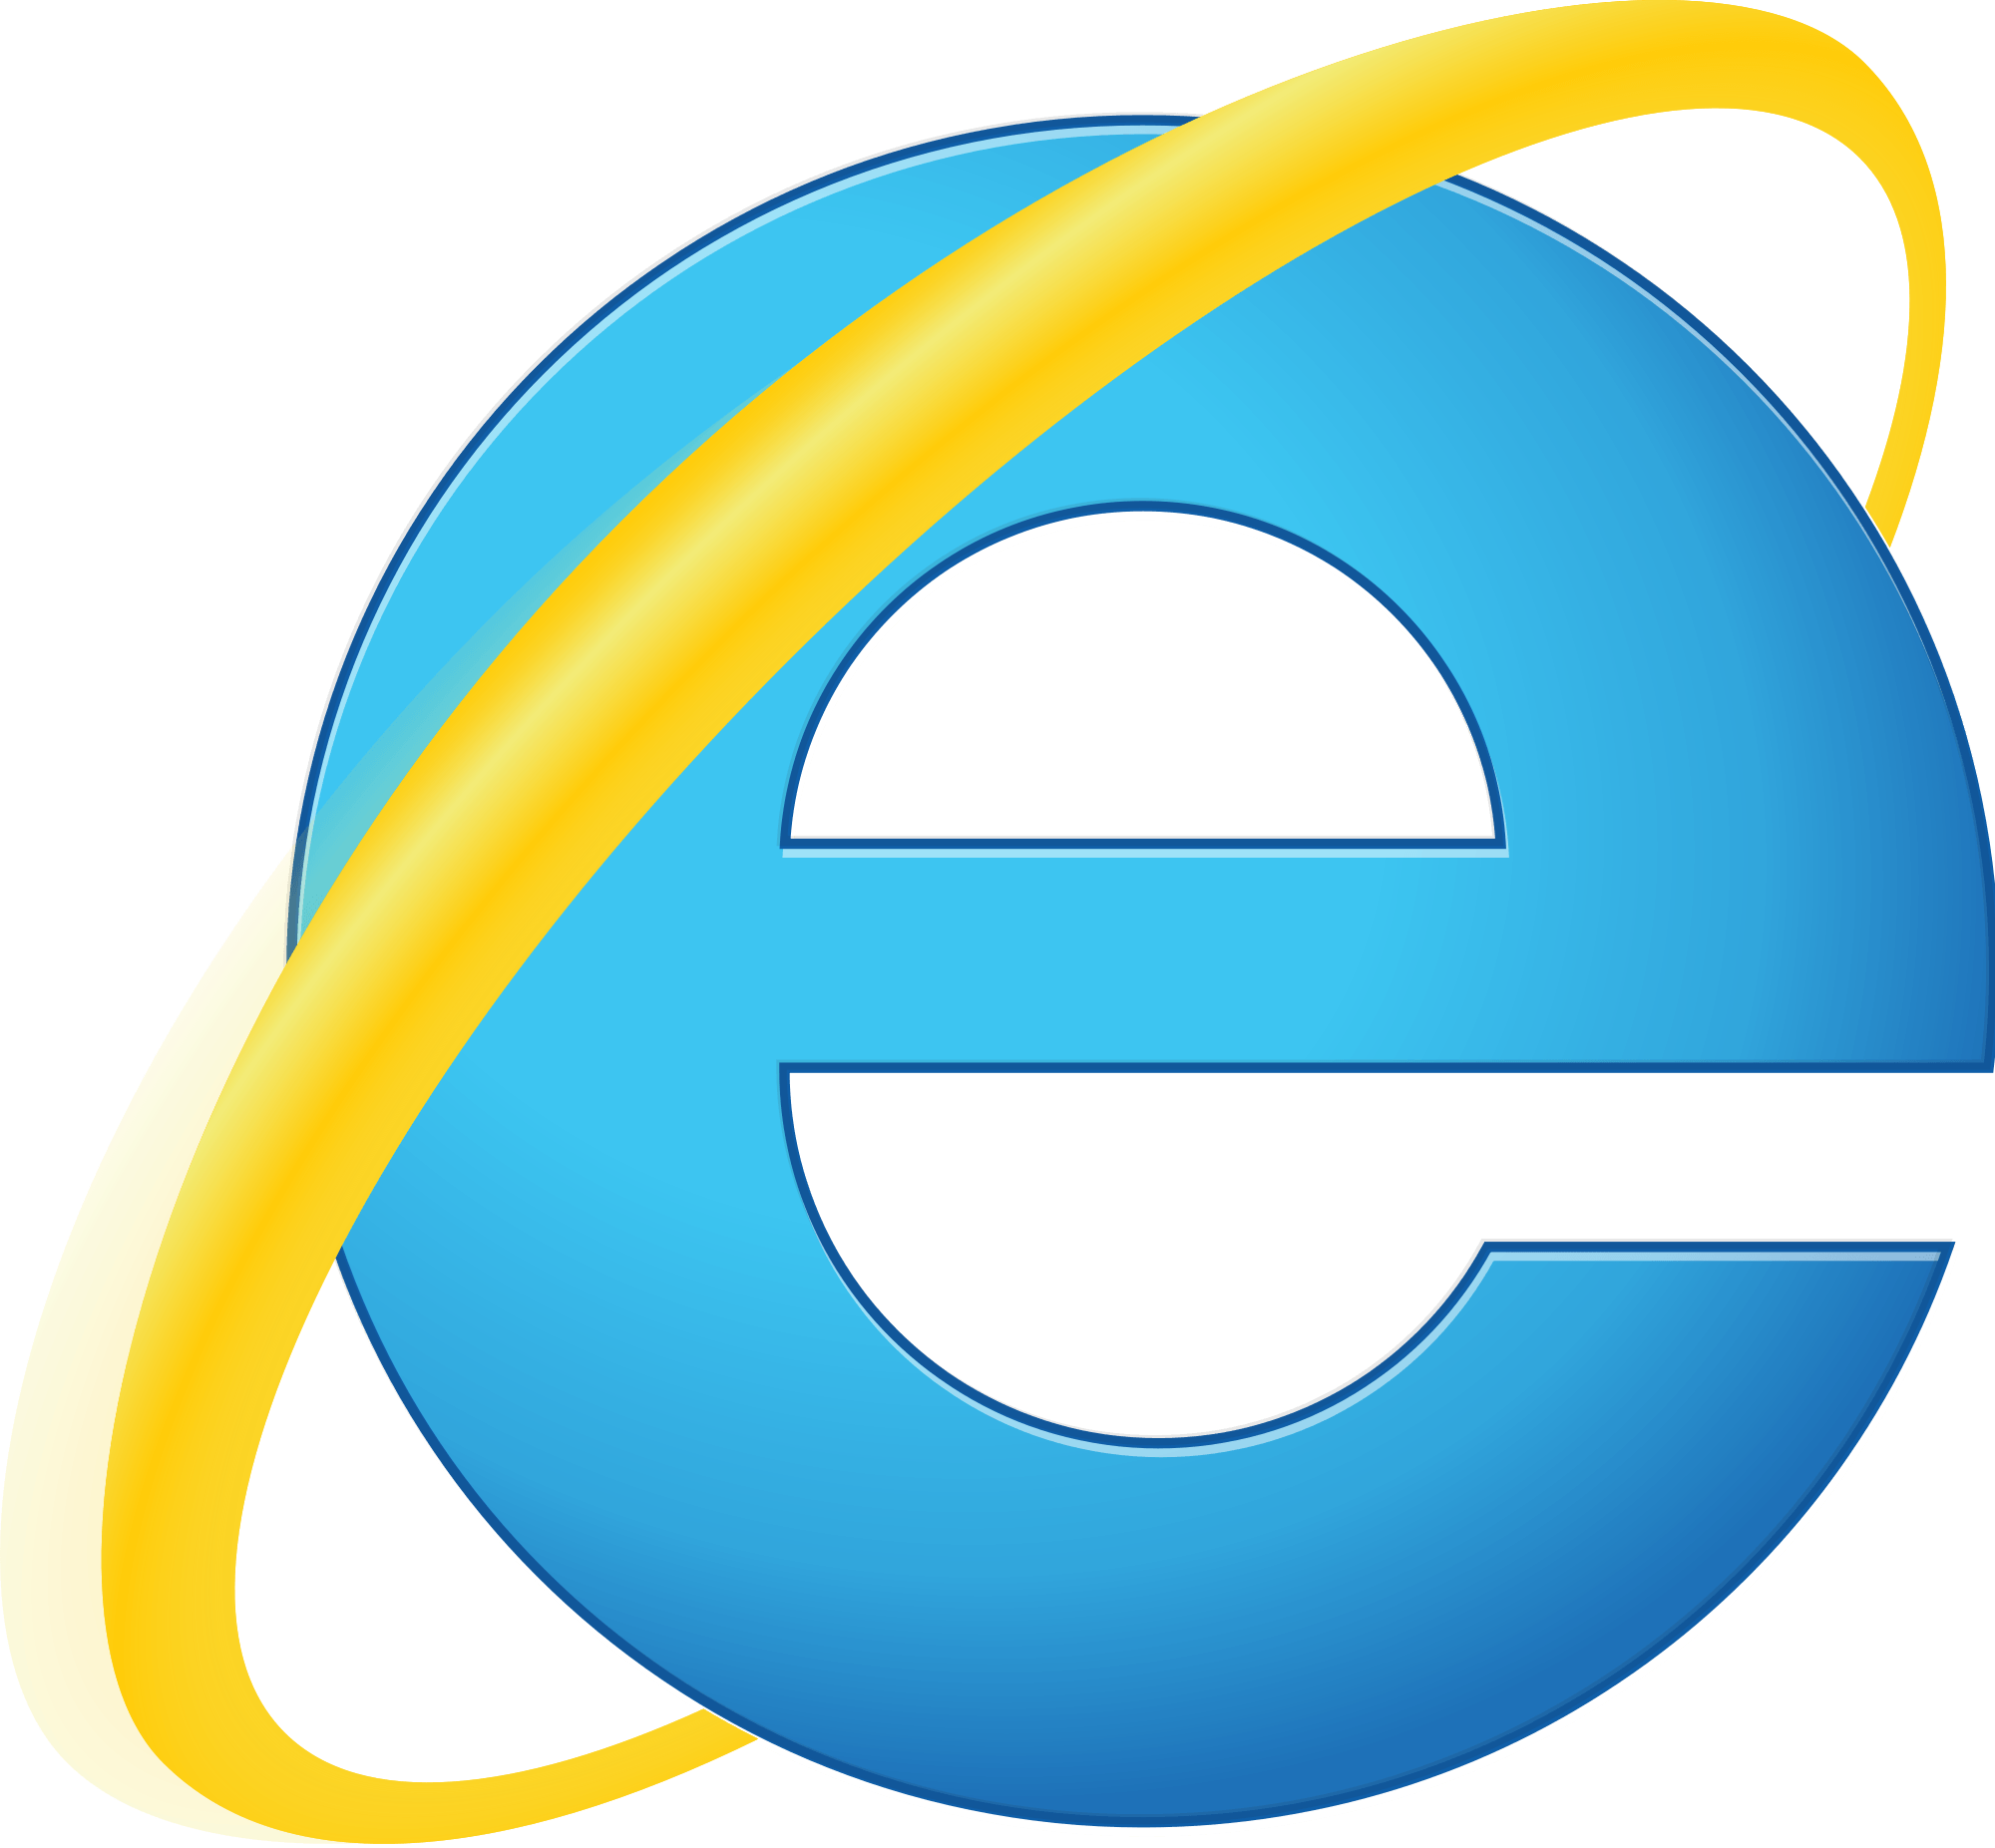 Internet Explorer 10 Logo - Internet Explorer Ceasing Browser Support | SurfYourName.com